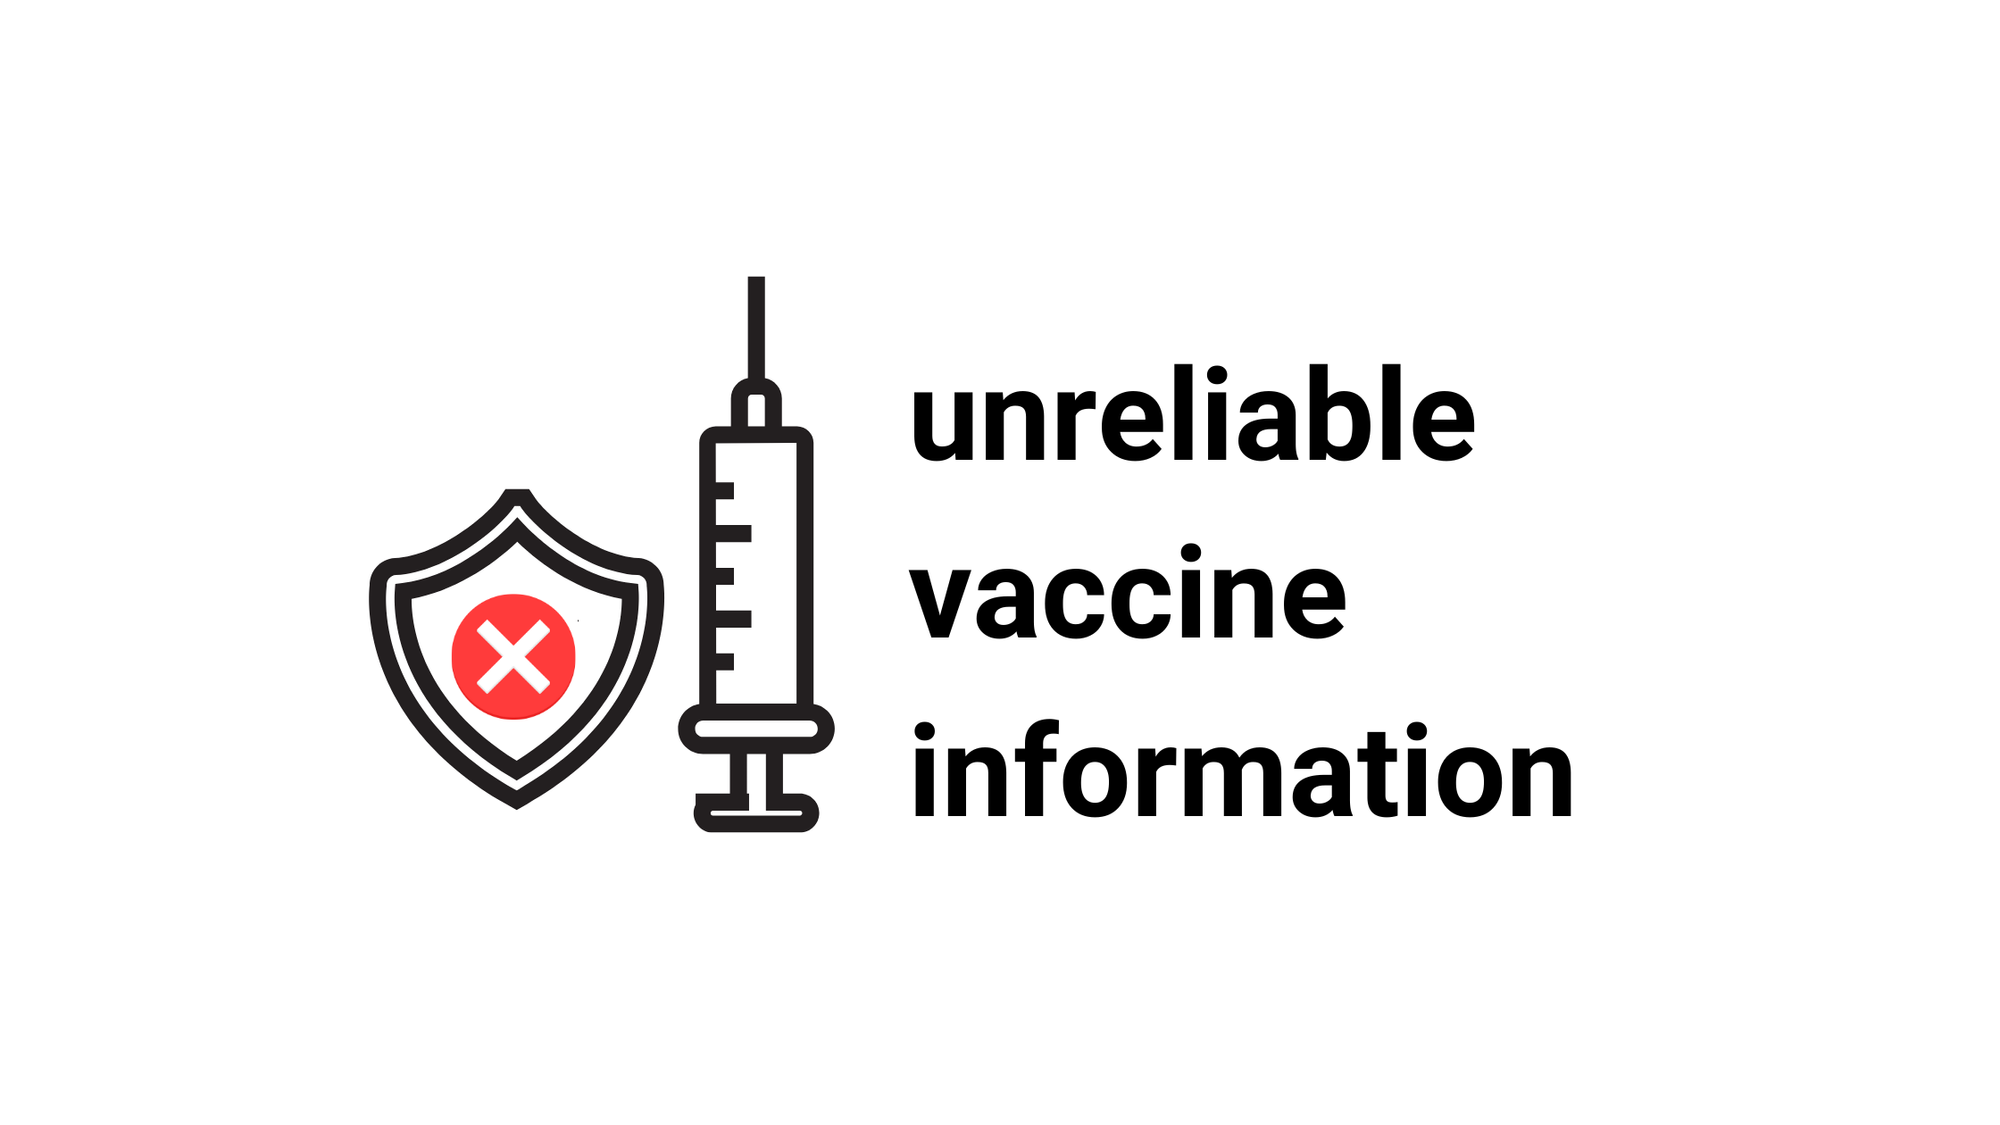 22-12-07—unreliable vaccine information